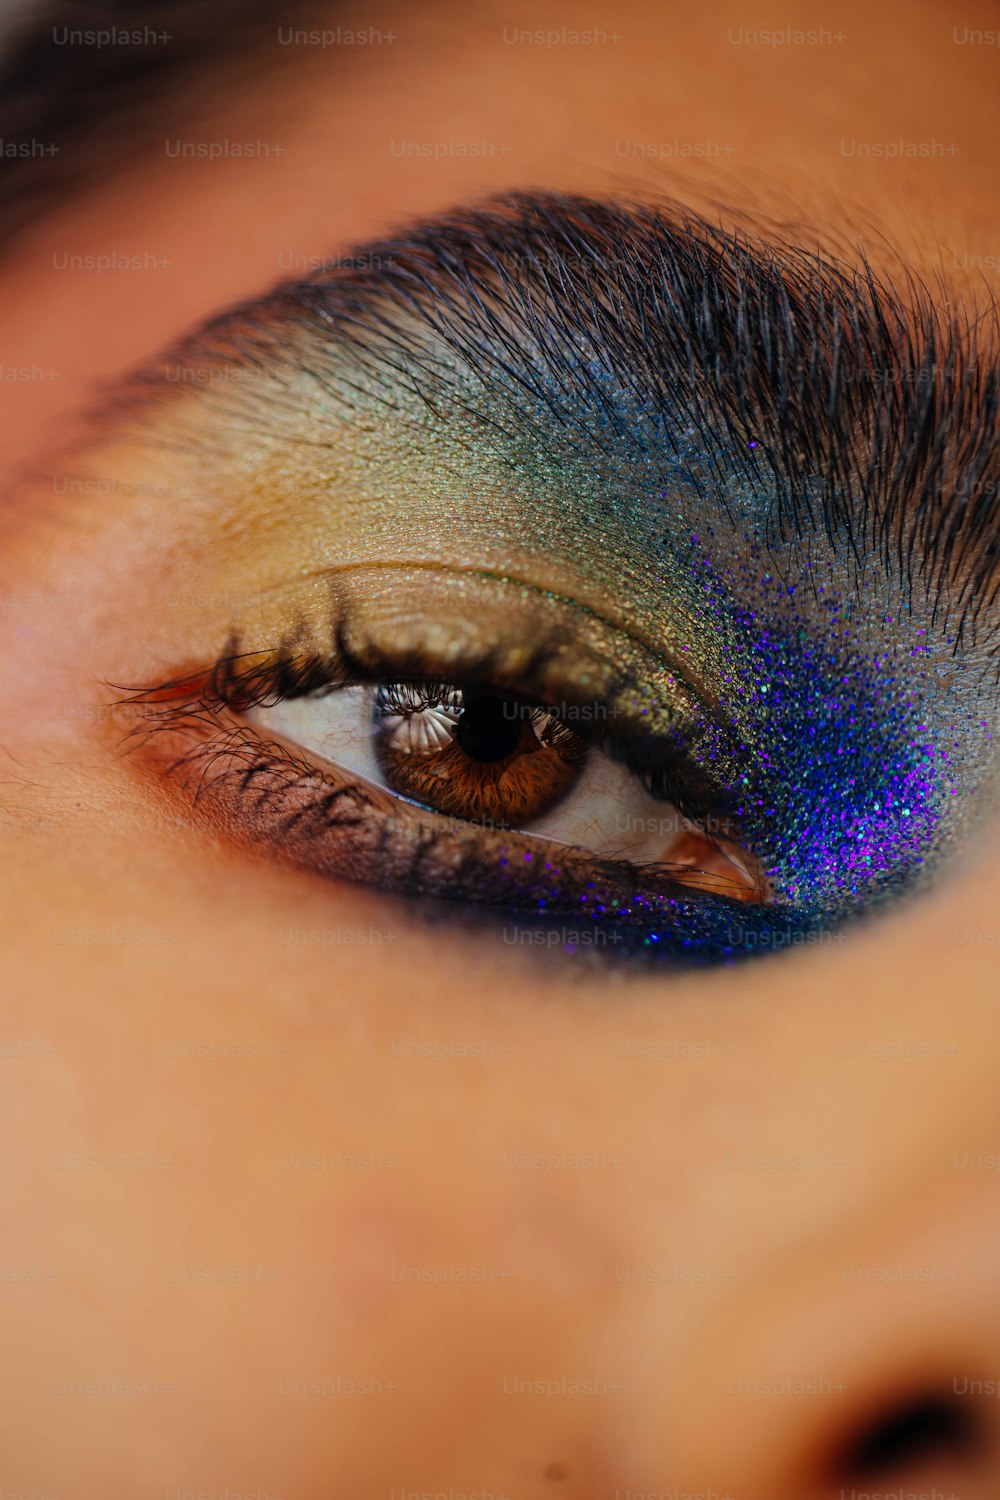 eine Nahaufnahme des Auges einer Person mit einem blauen und grünen Lidschatten